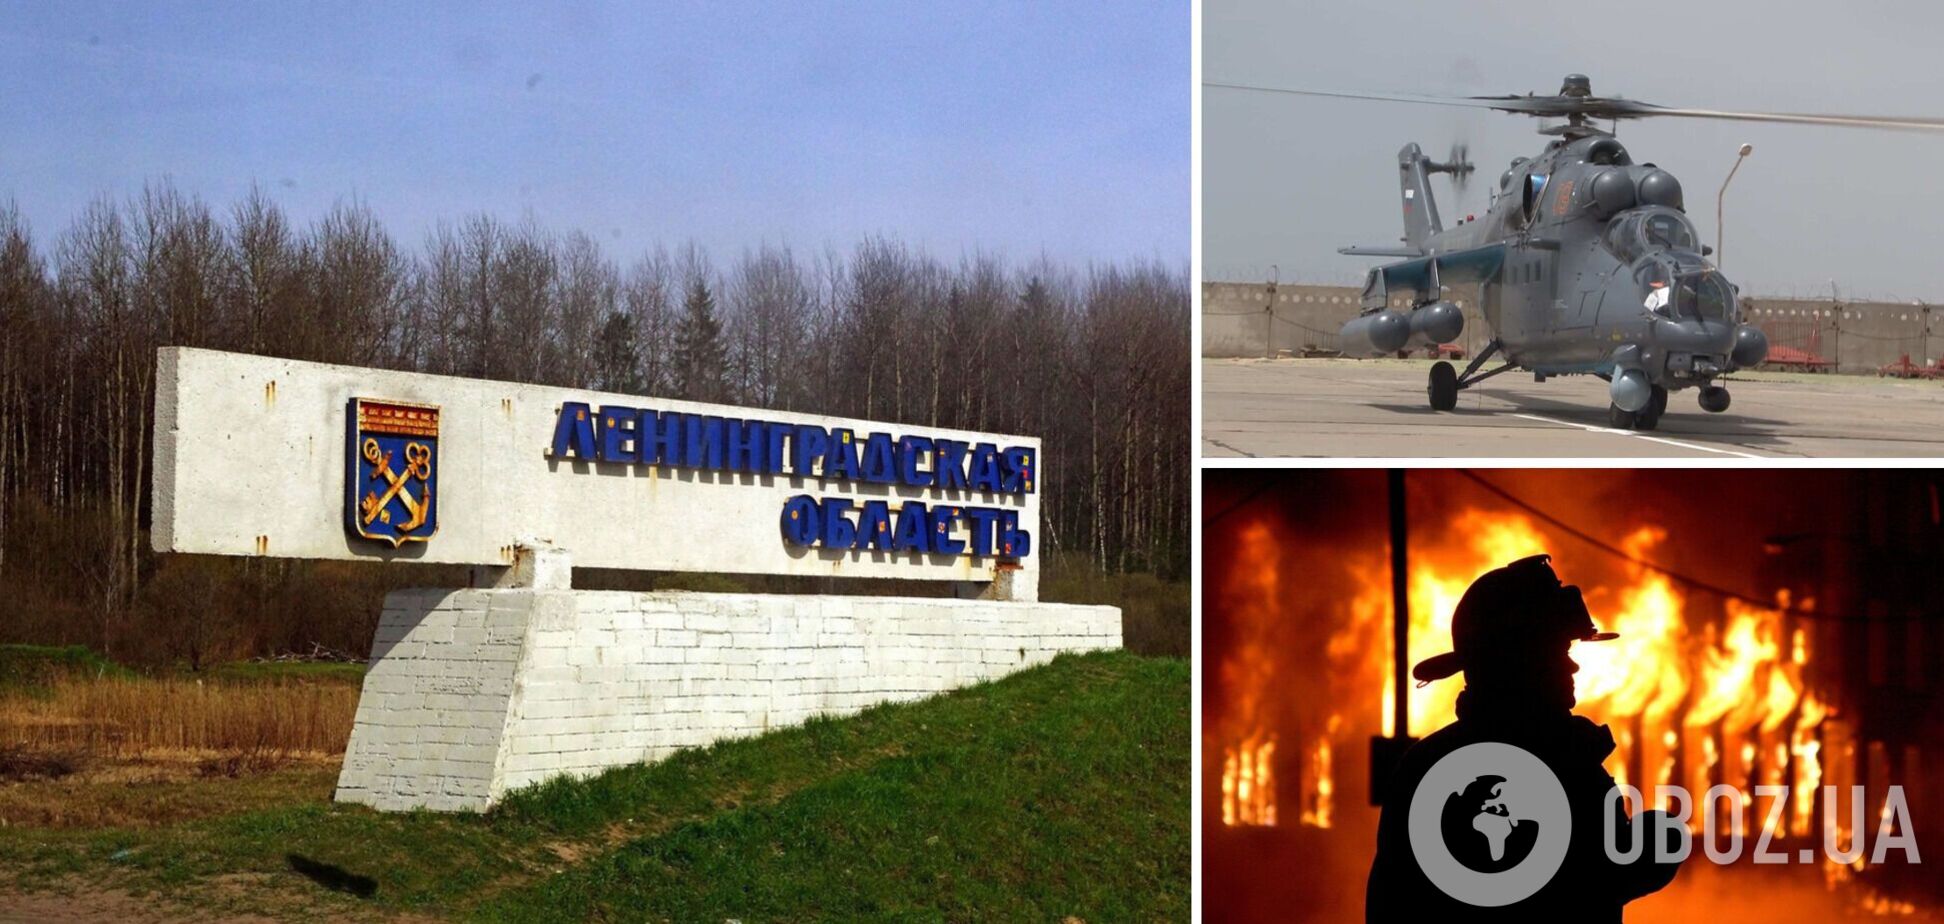 Нова 'бавовна': у Ленінградській області сталася пожежа в ангарах, де були розміщені гелікоптери